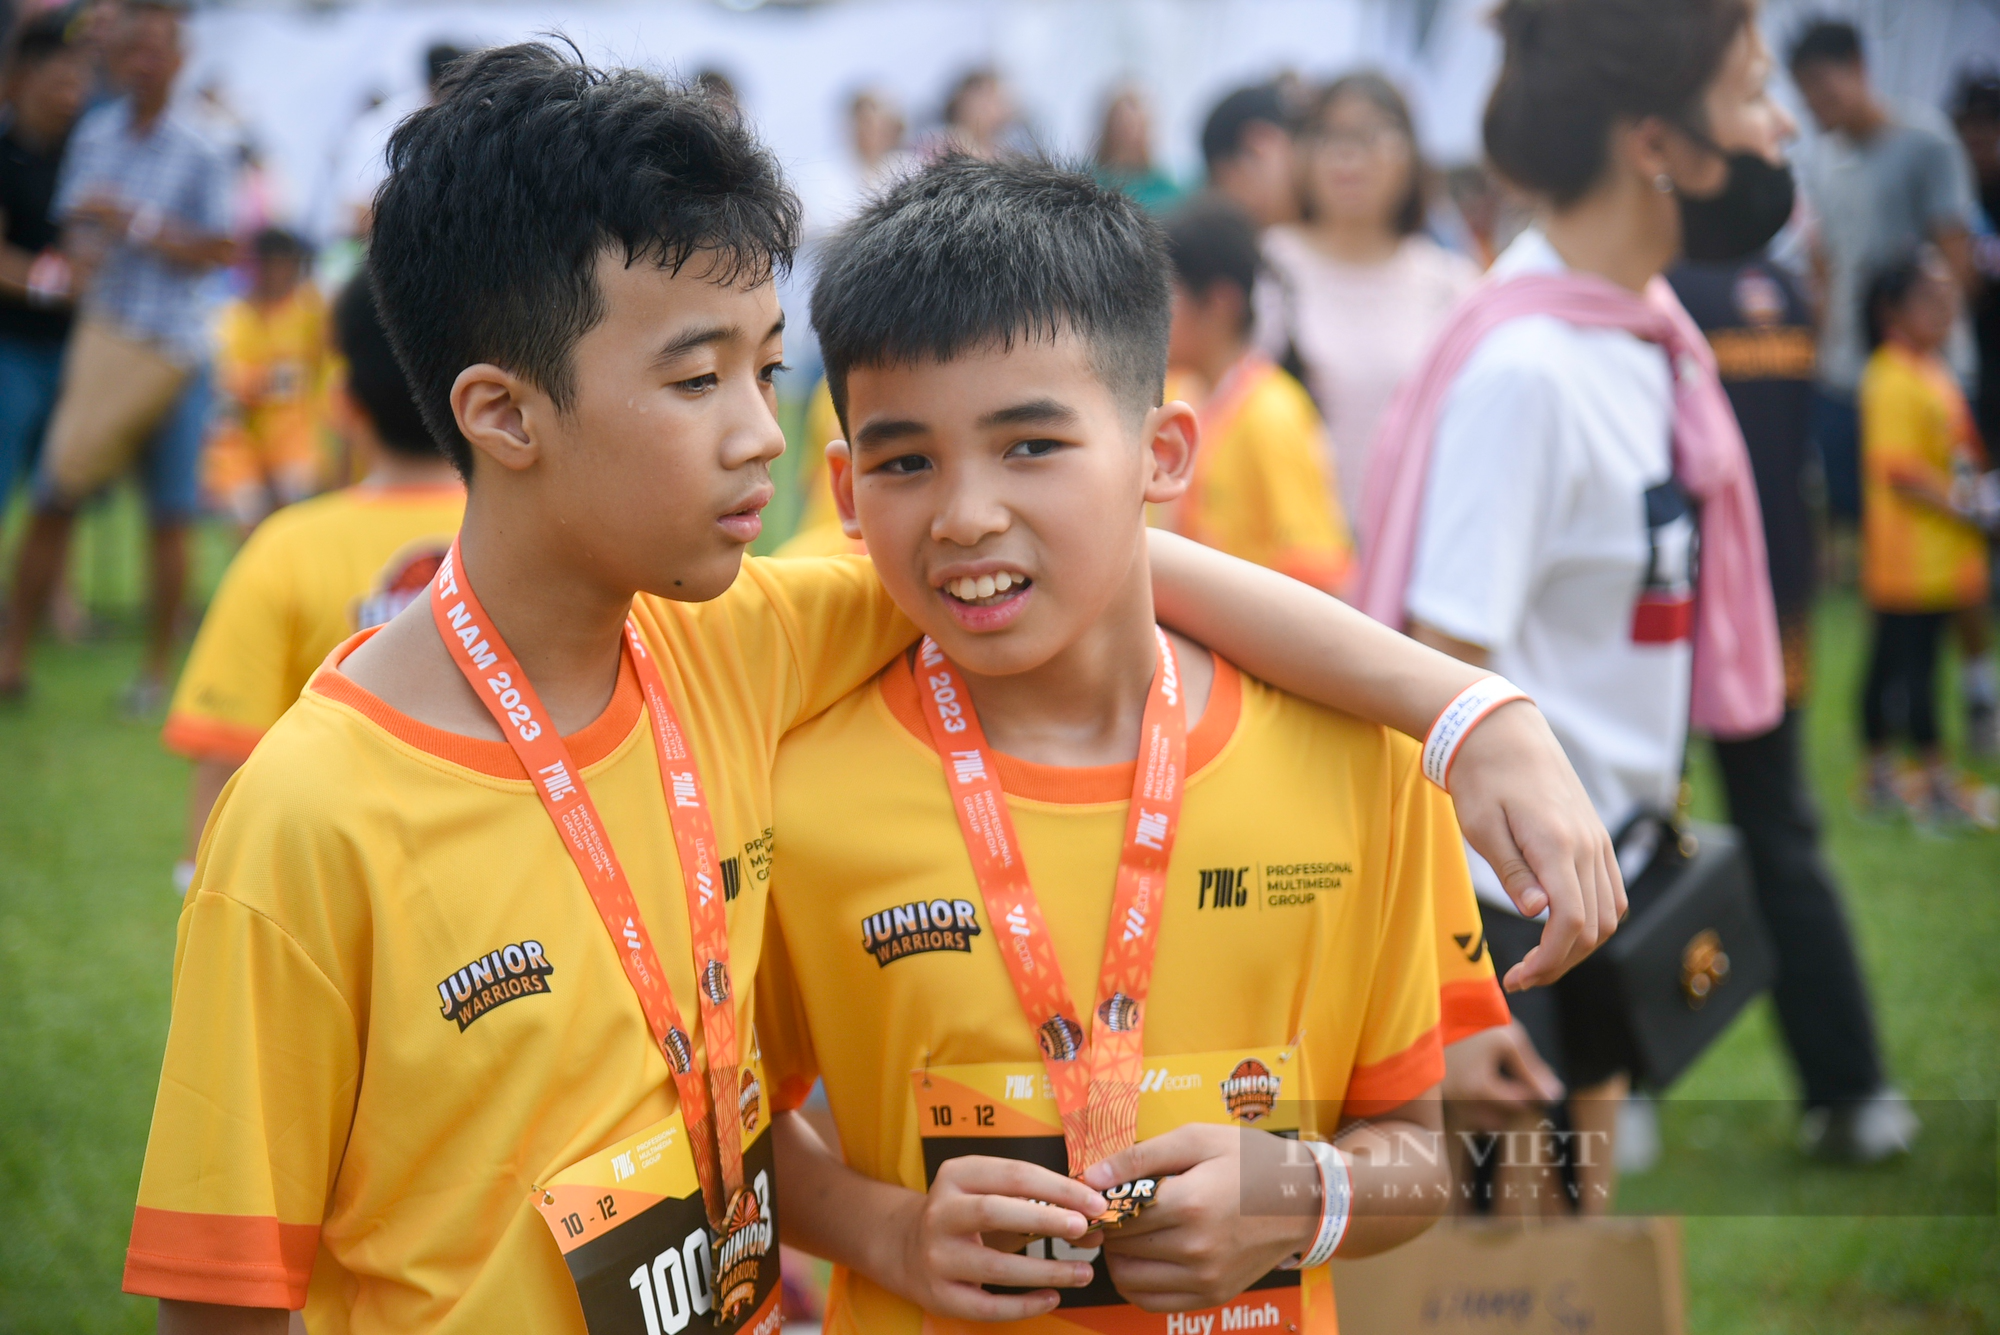 Hơn 1.500 runner nhí tham gia giải đấu vượt chướng ngại vật được tổ chức tại Hà Nội - Ảnh 11.